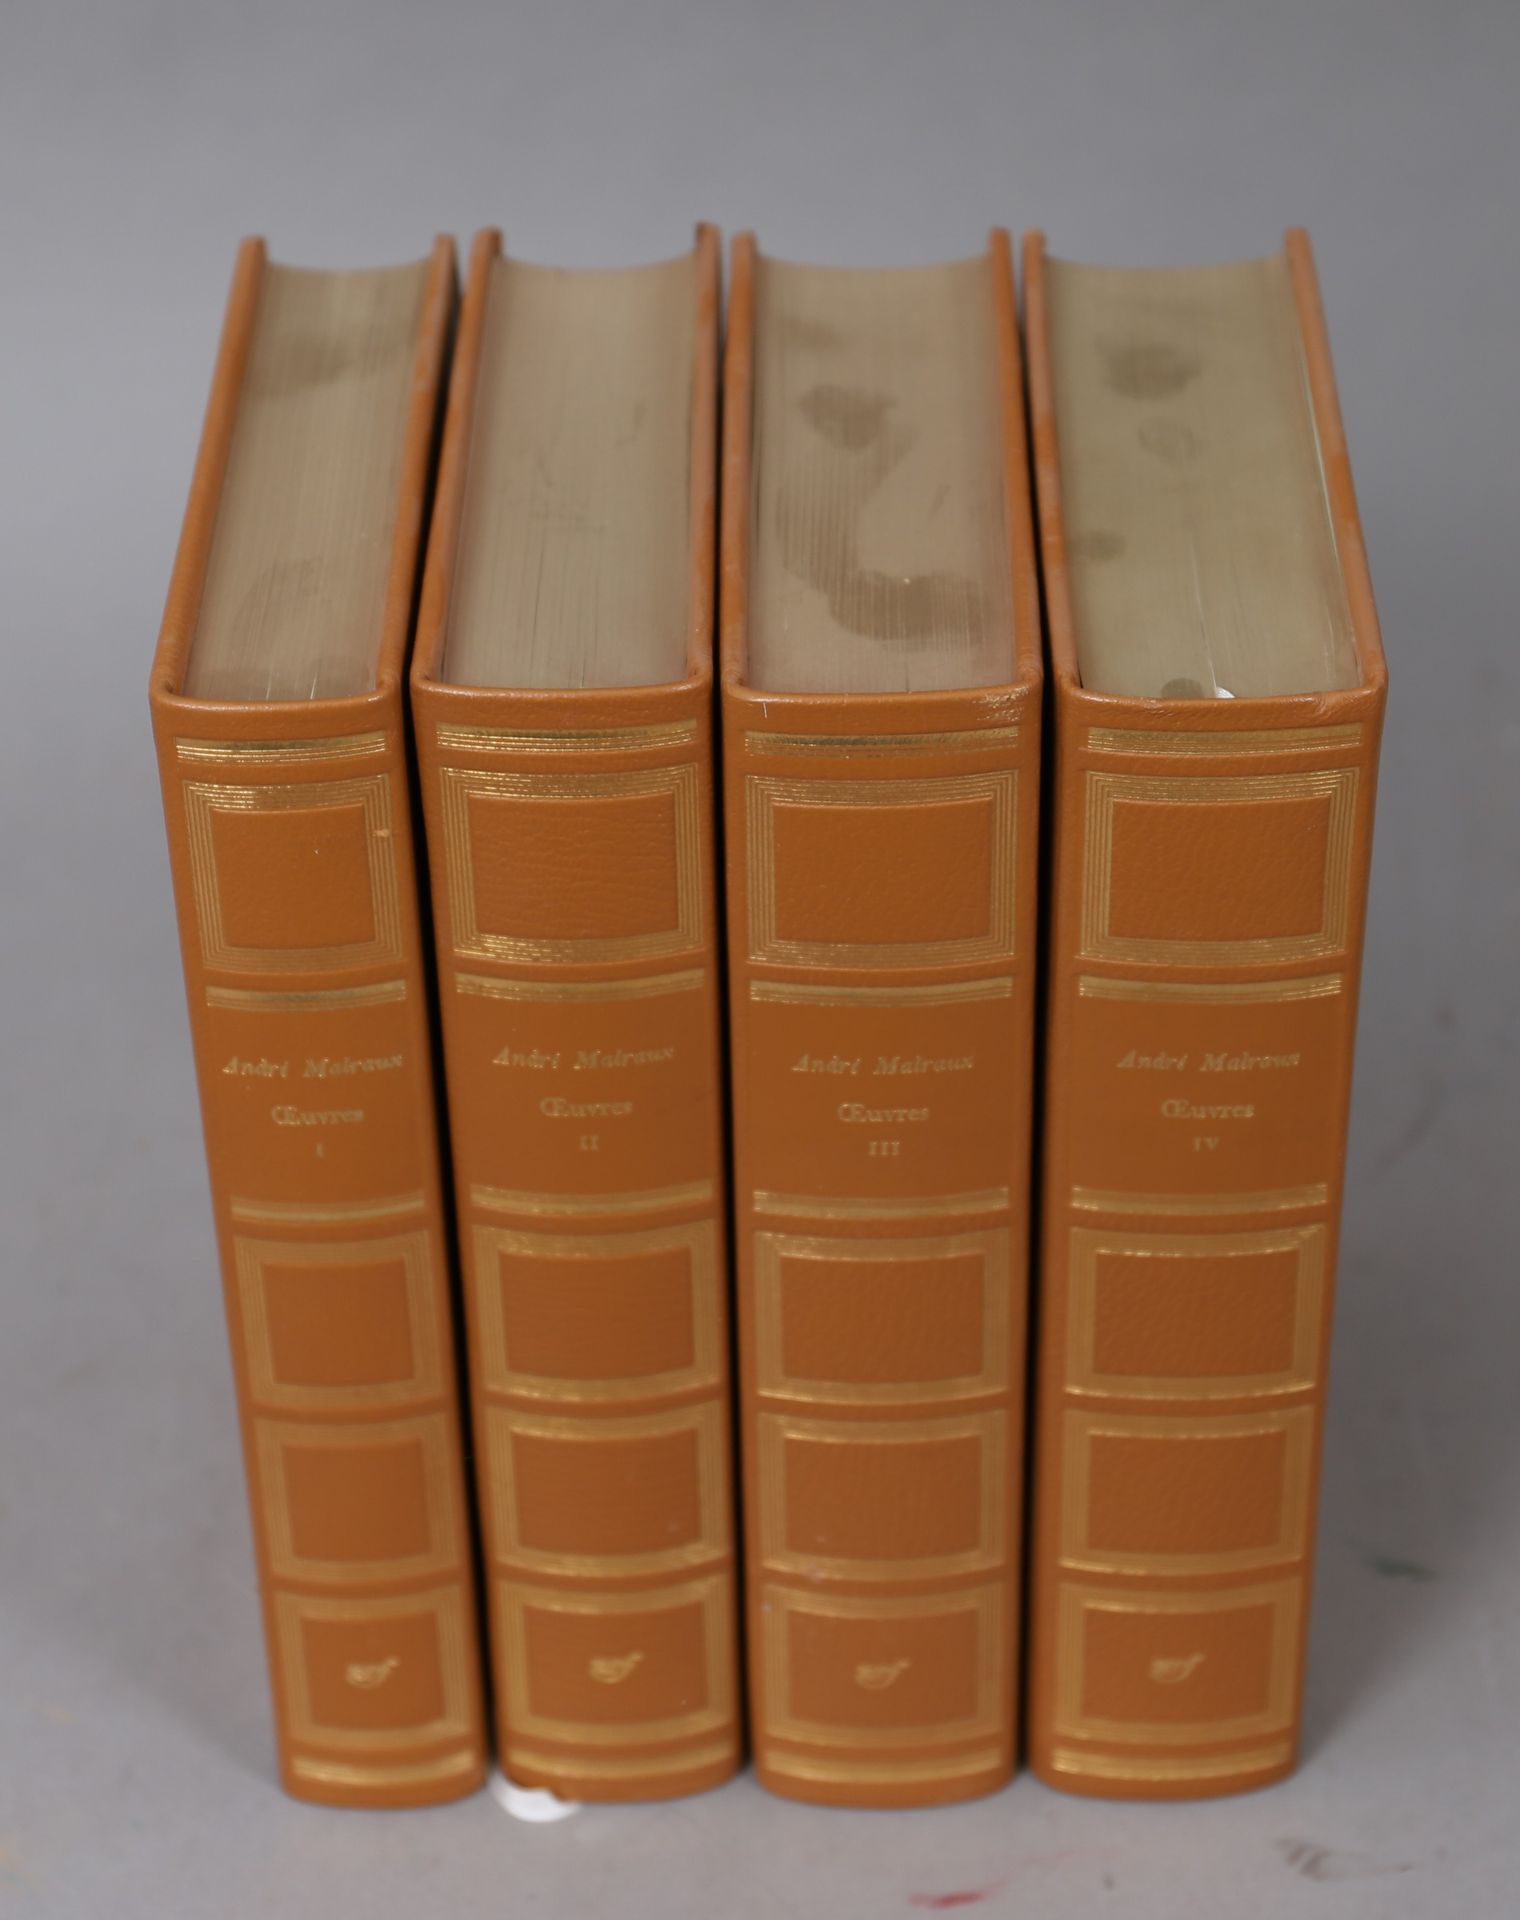 Null Opere di André MALRAUX

NRF

4 volumi rilegati